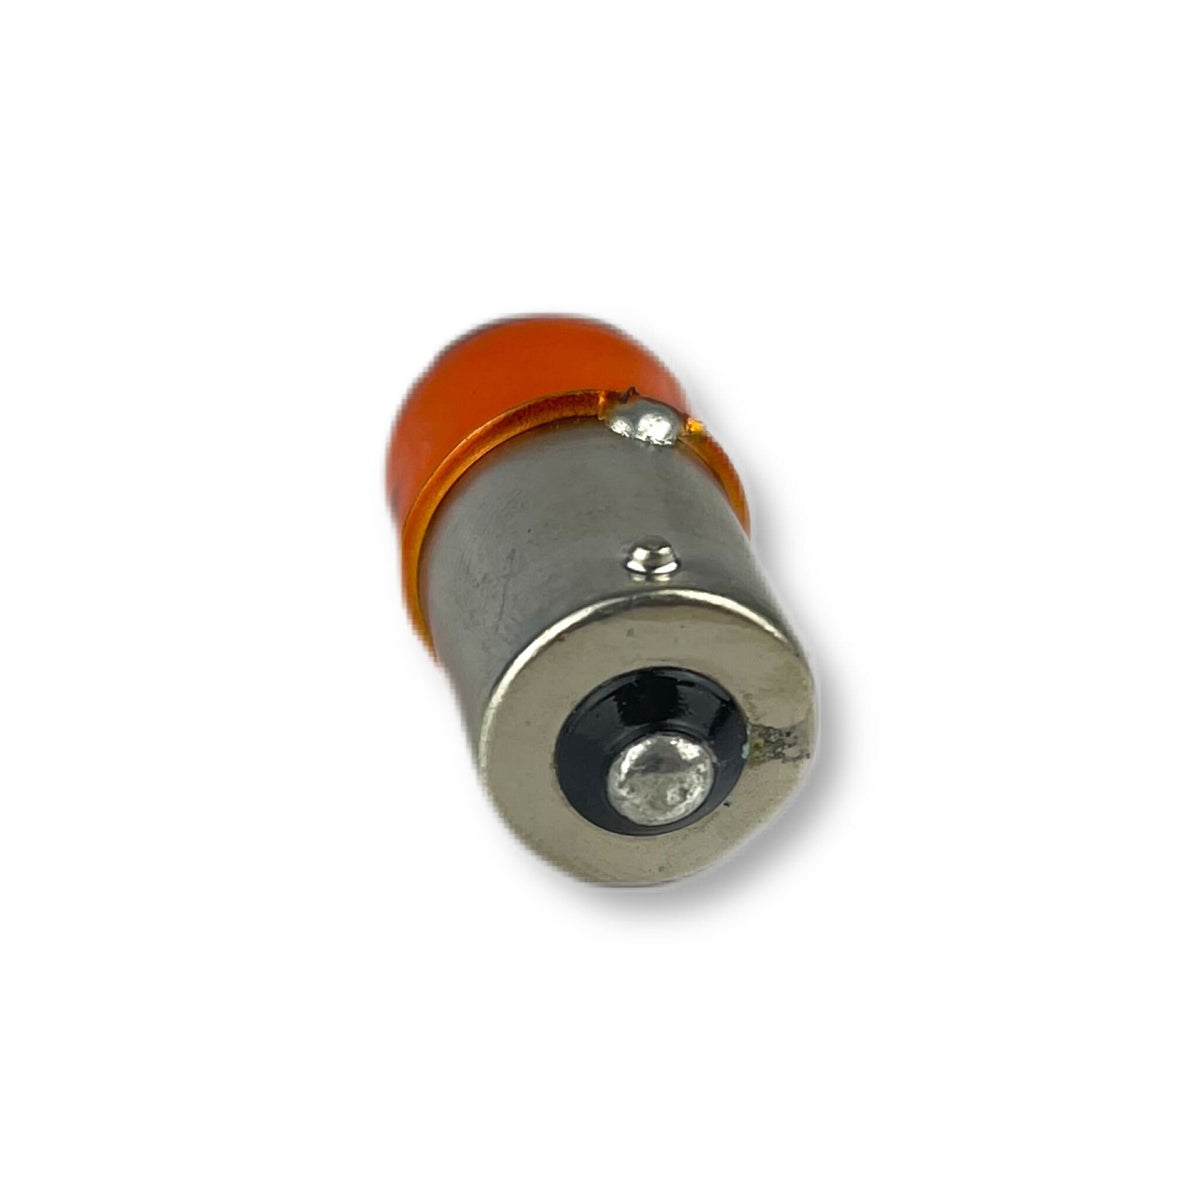 Bulb - Indicator/Pilot - SCC - 18mm Lens - 12V 10W - Amber - Offset Pins